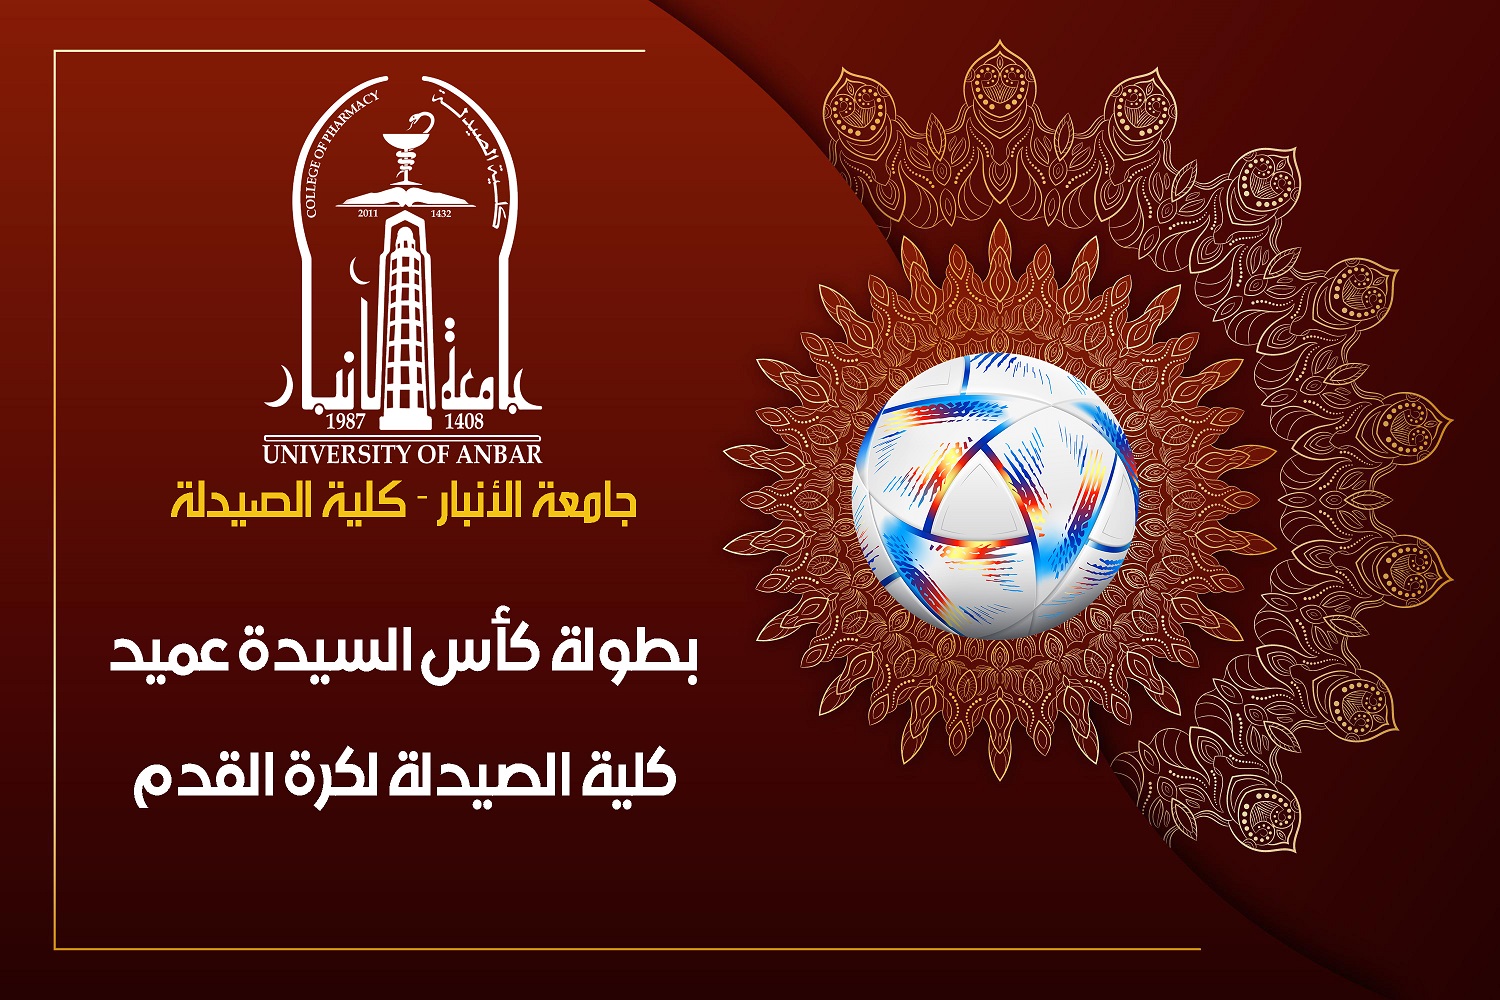 بطولة كأس السيدة عميد كلية الصيدلة لكرة القدم 